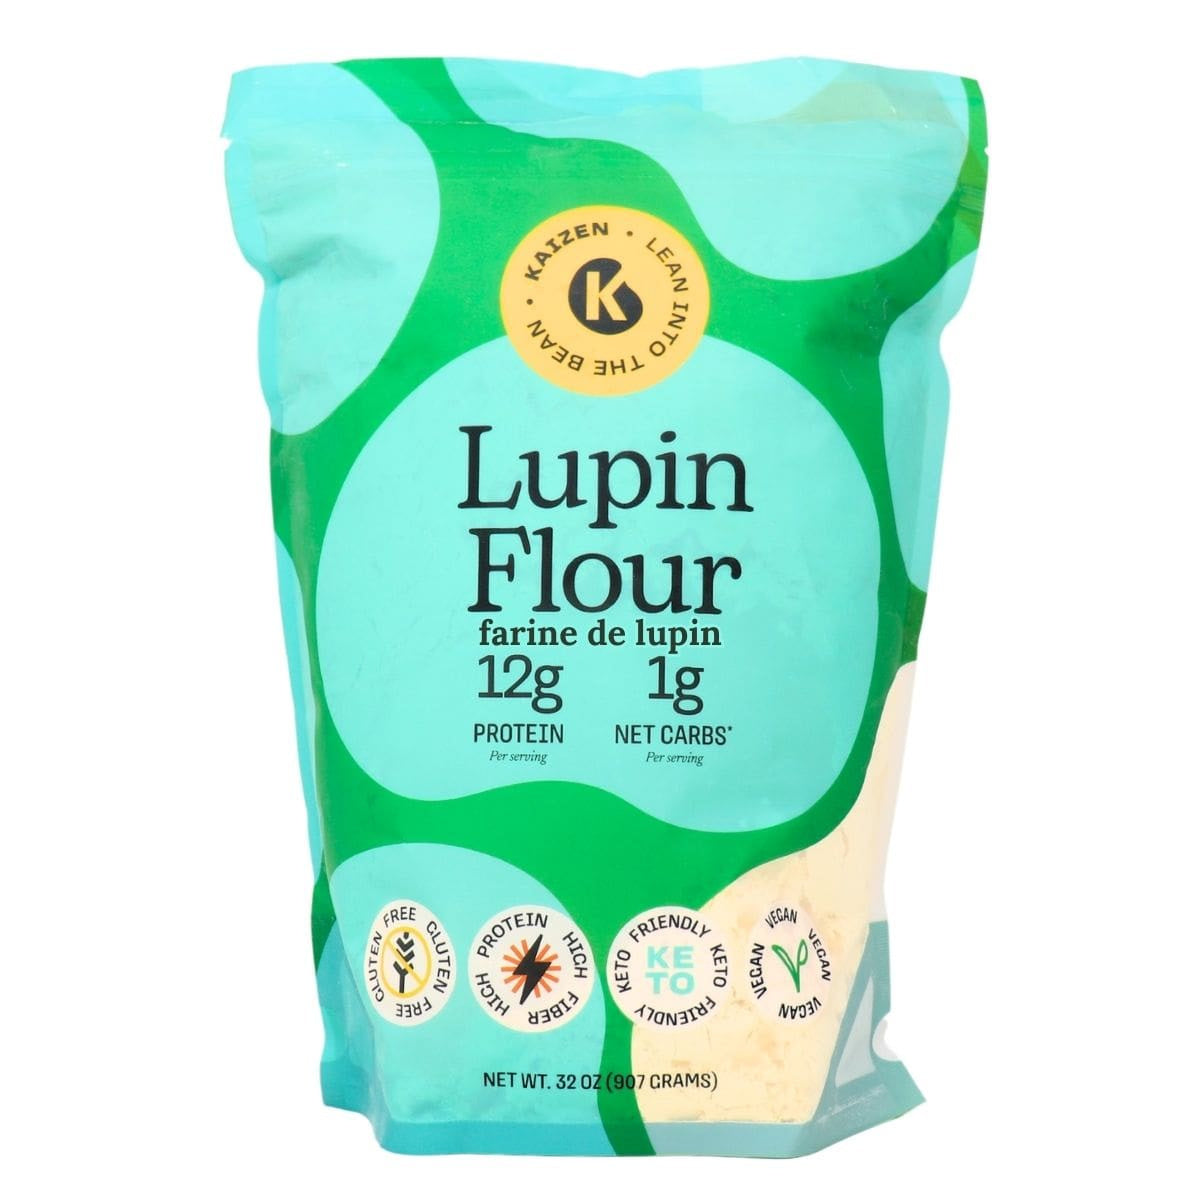 Kaizen - Keto High Protein Lupin Flour - 2lb